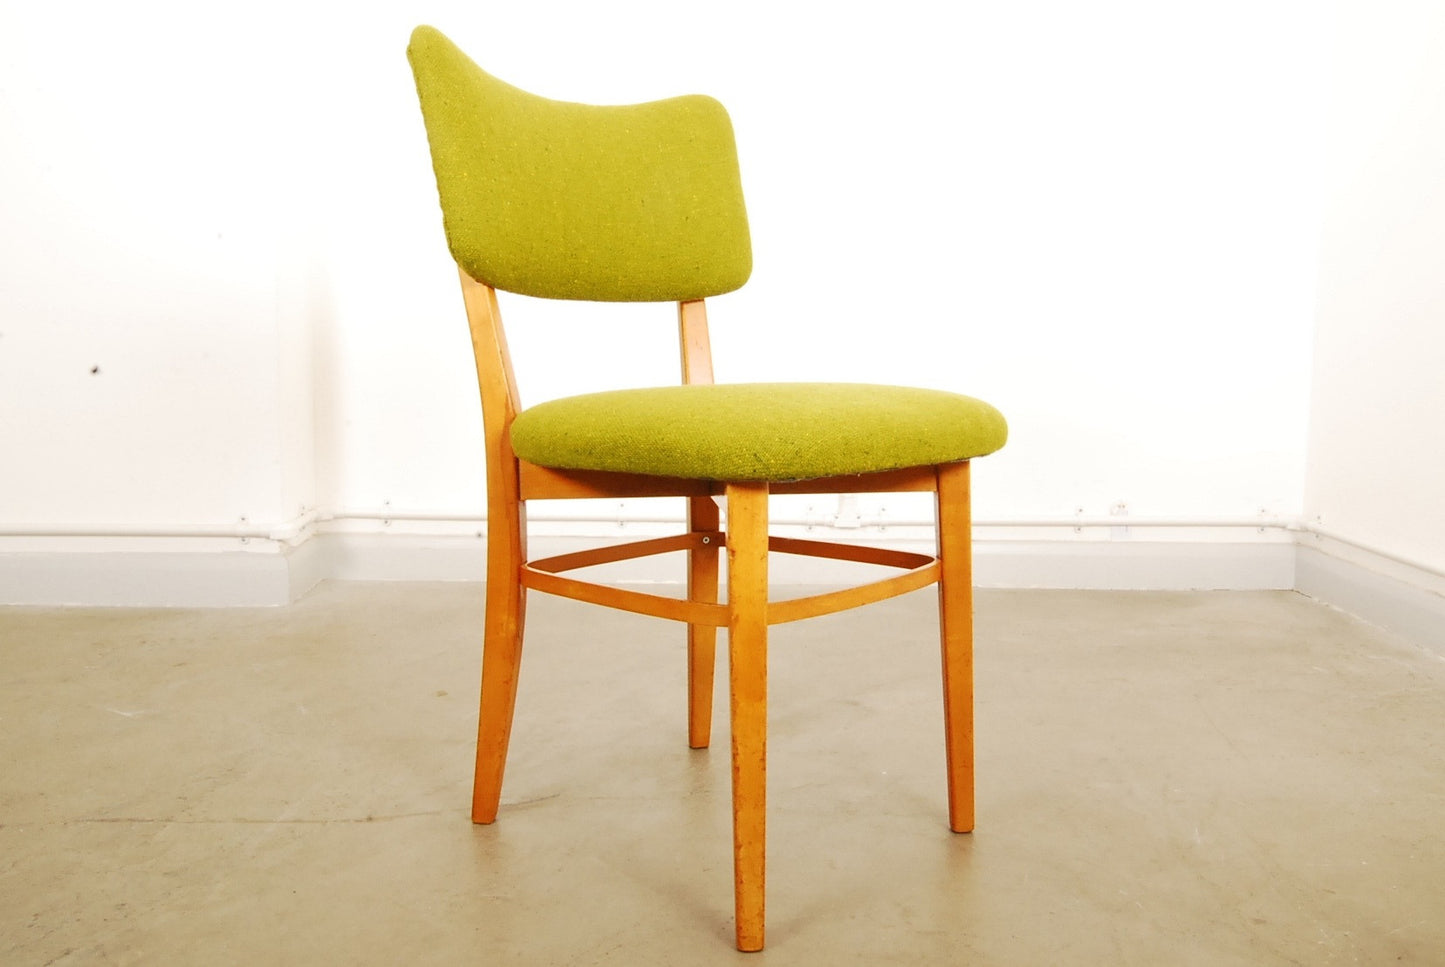 Desk / dining chair by Carl Malmsten